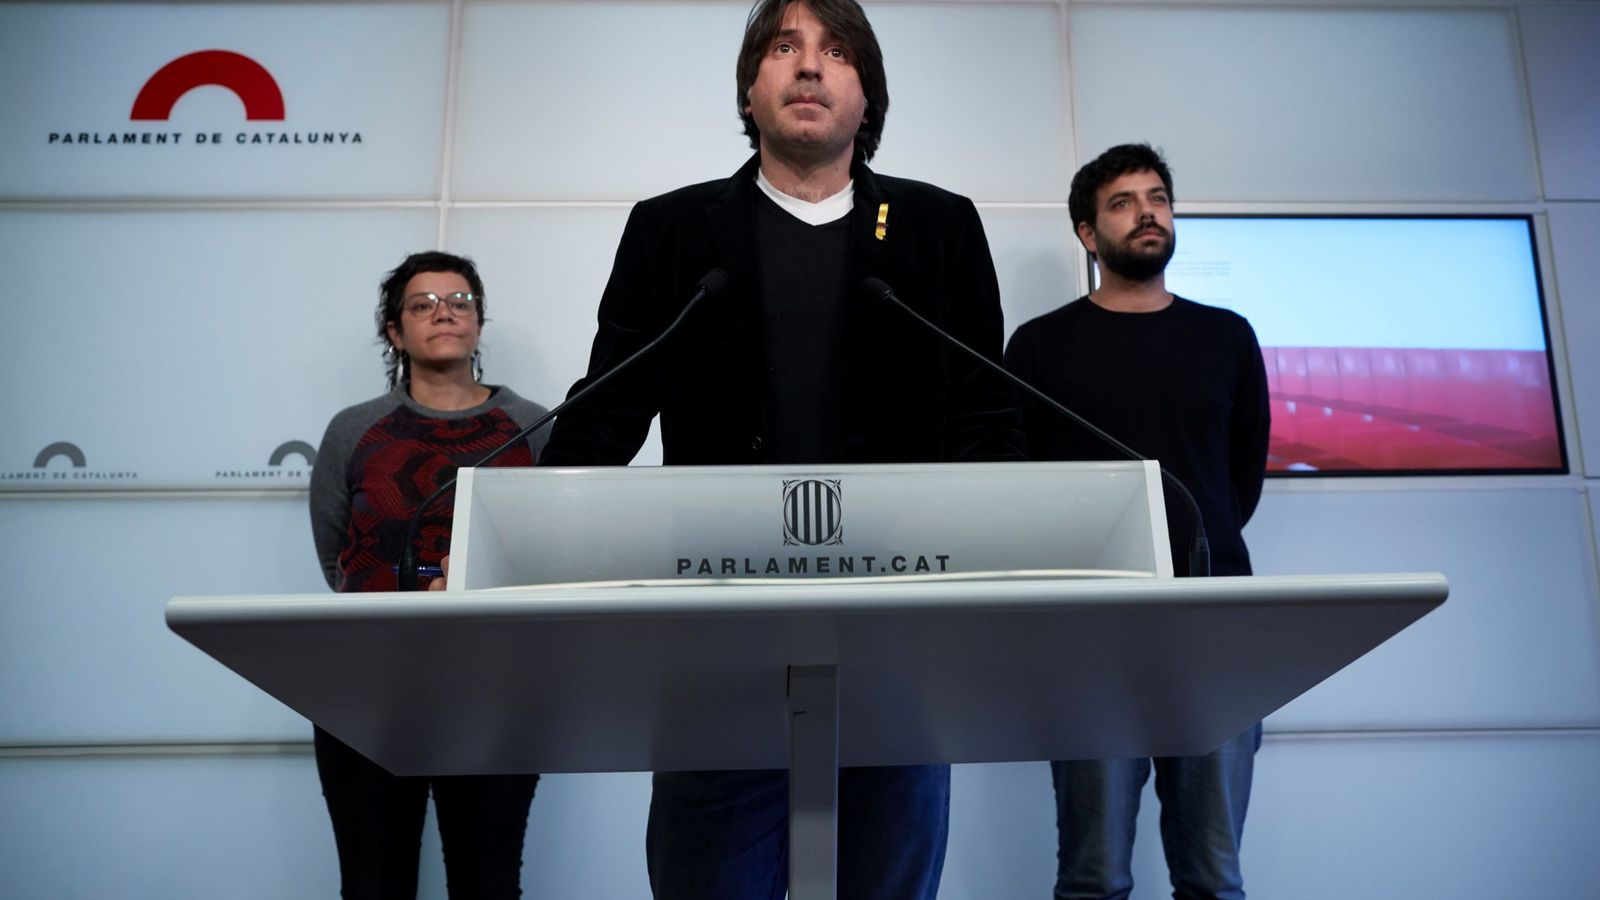 Foto: El diputado de Junts per Cat Francesc Dalmases, en el centro de la imagen, en una rueda de prensa en el Parlament de Catalunya. Es uno de los implicados (EFE)